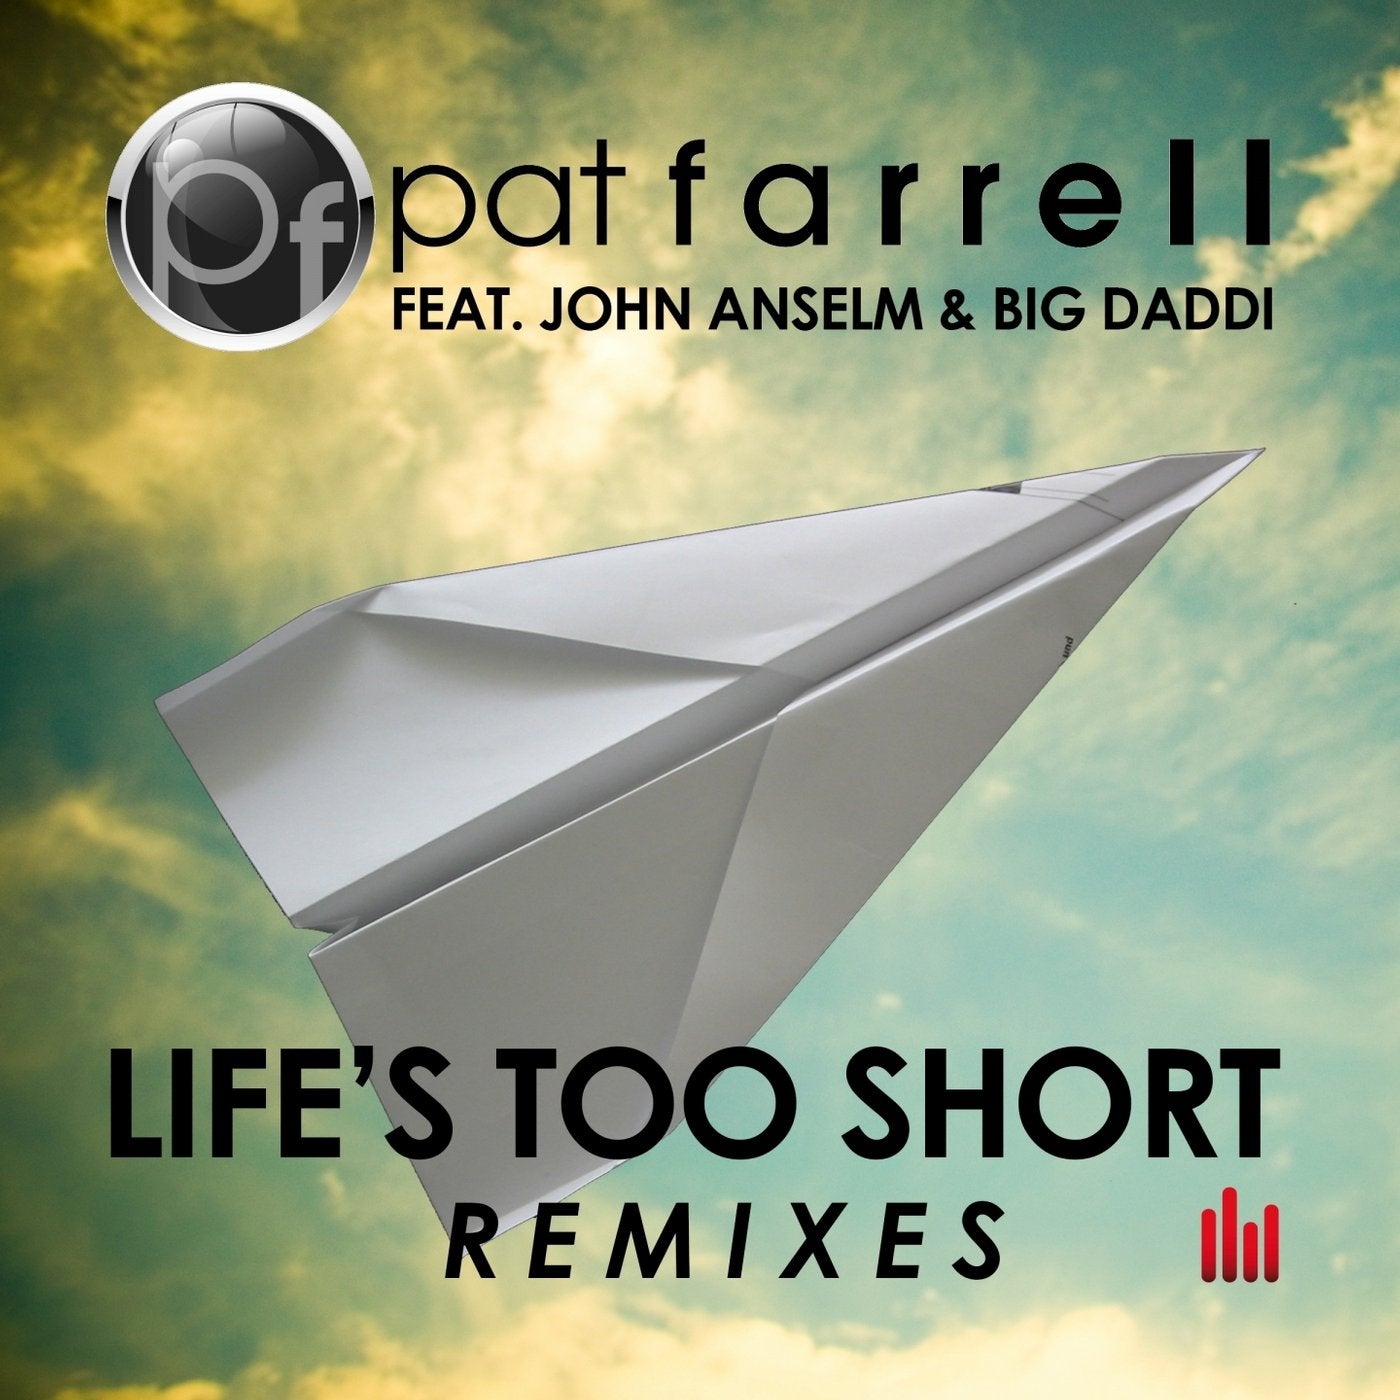 Life's Too Short (Remixes) (feat. John Anselm, Big Daddi)